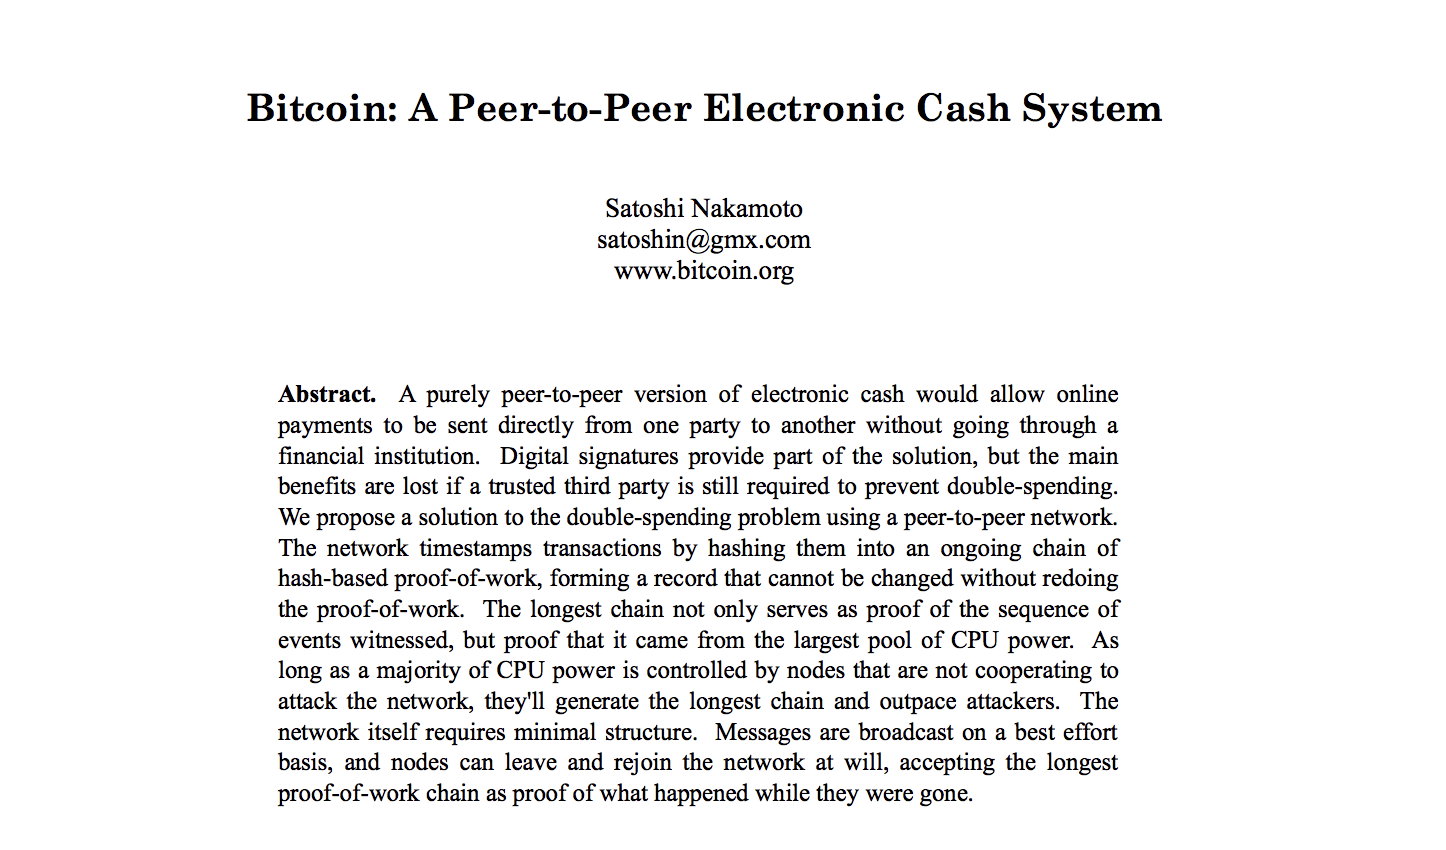 Faz 11 anos que Satoshi Nakamoto lançou o Bitcoin